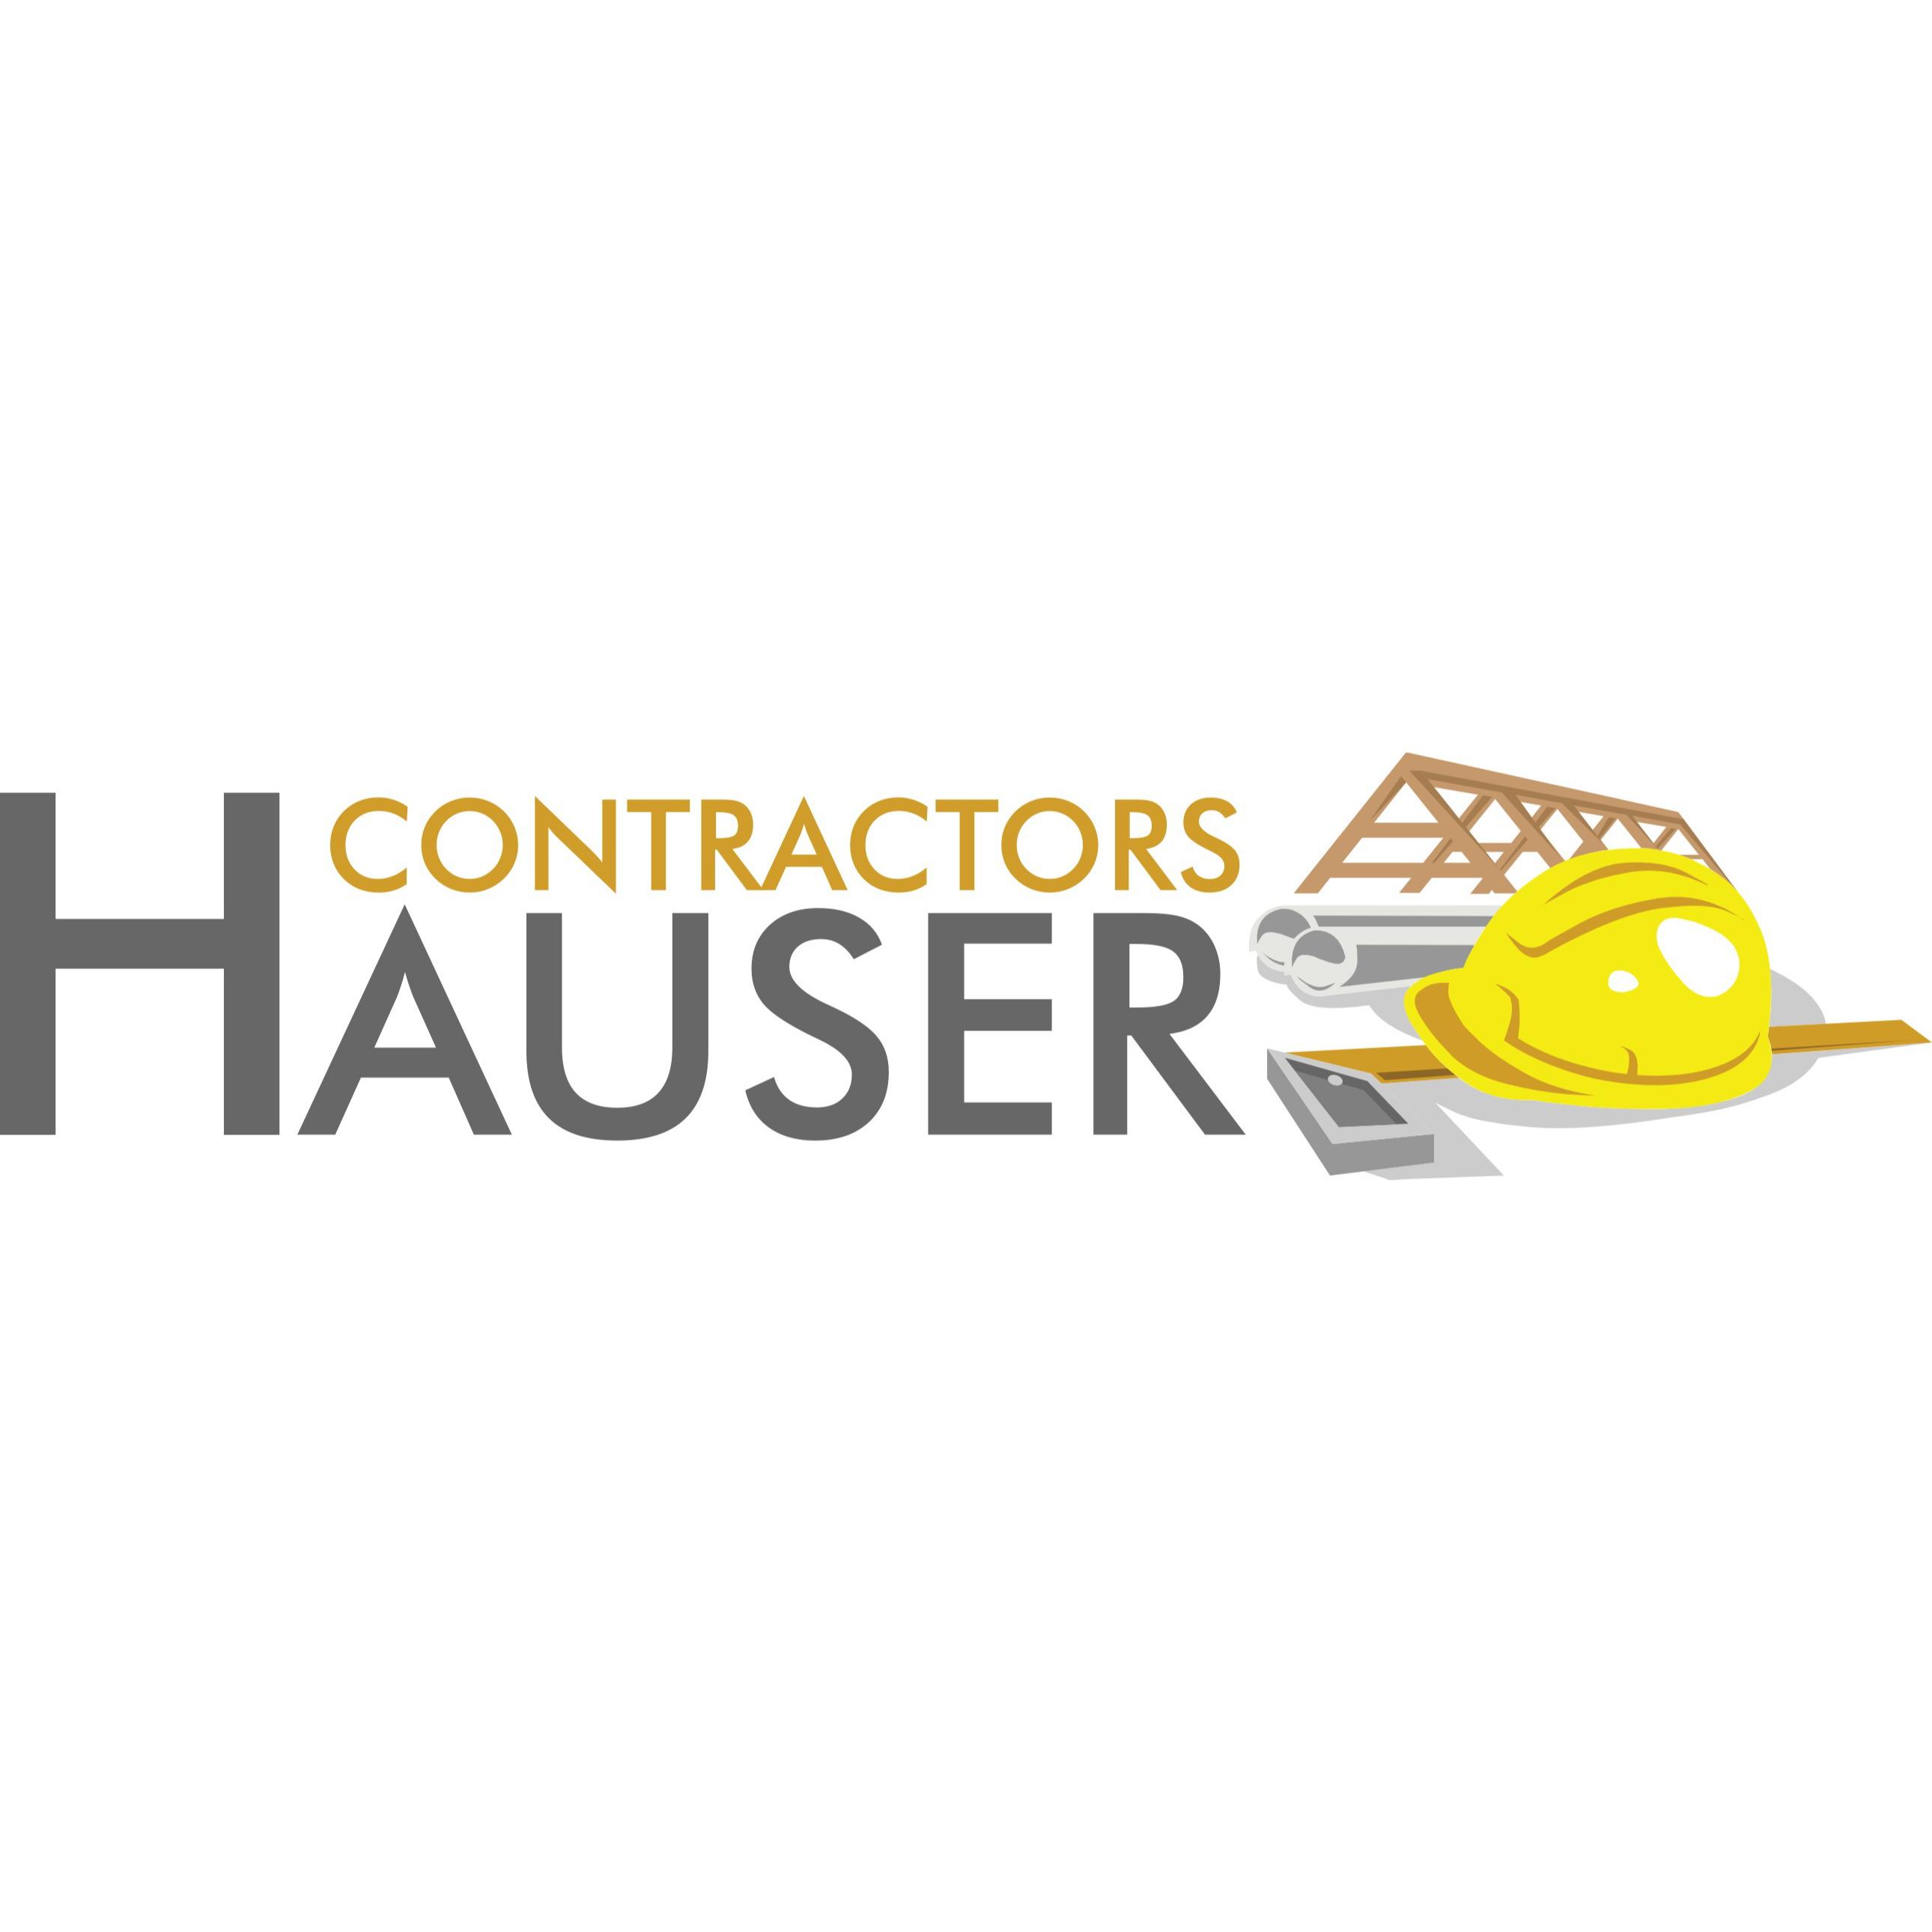 Hauser Contractors